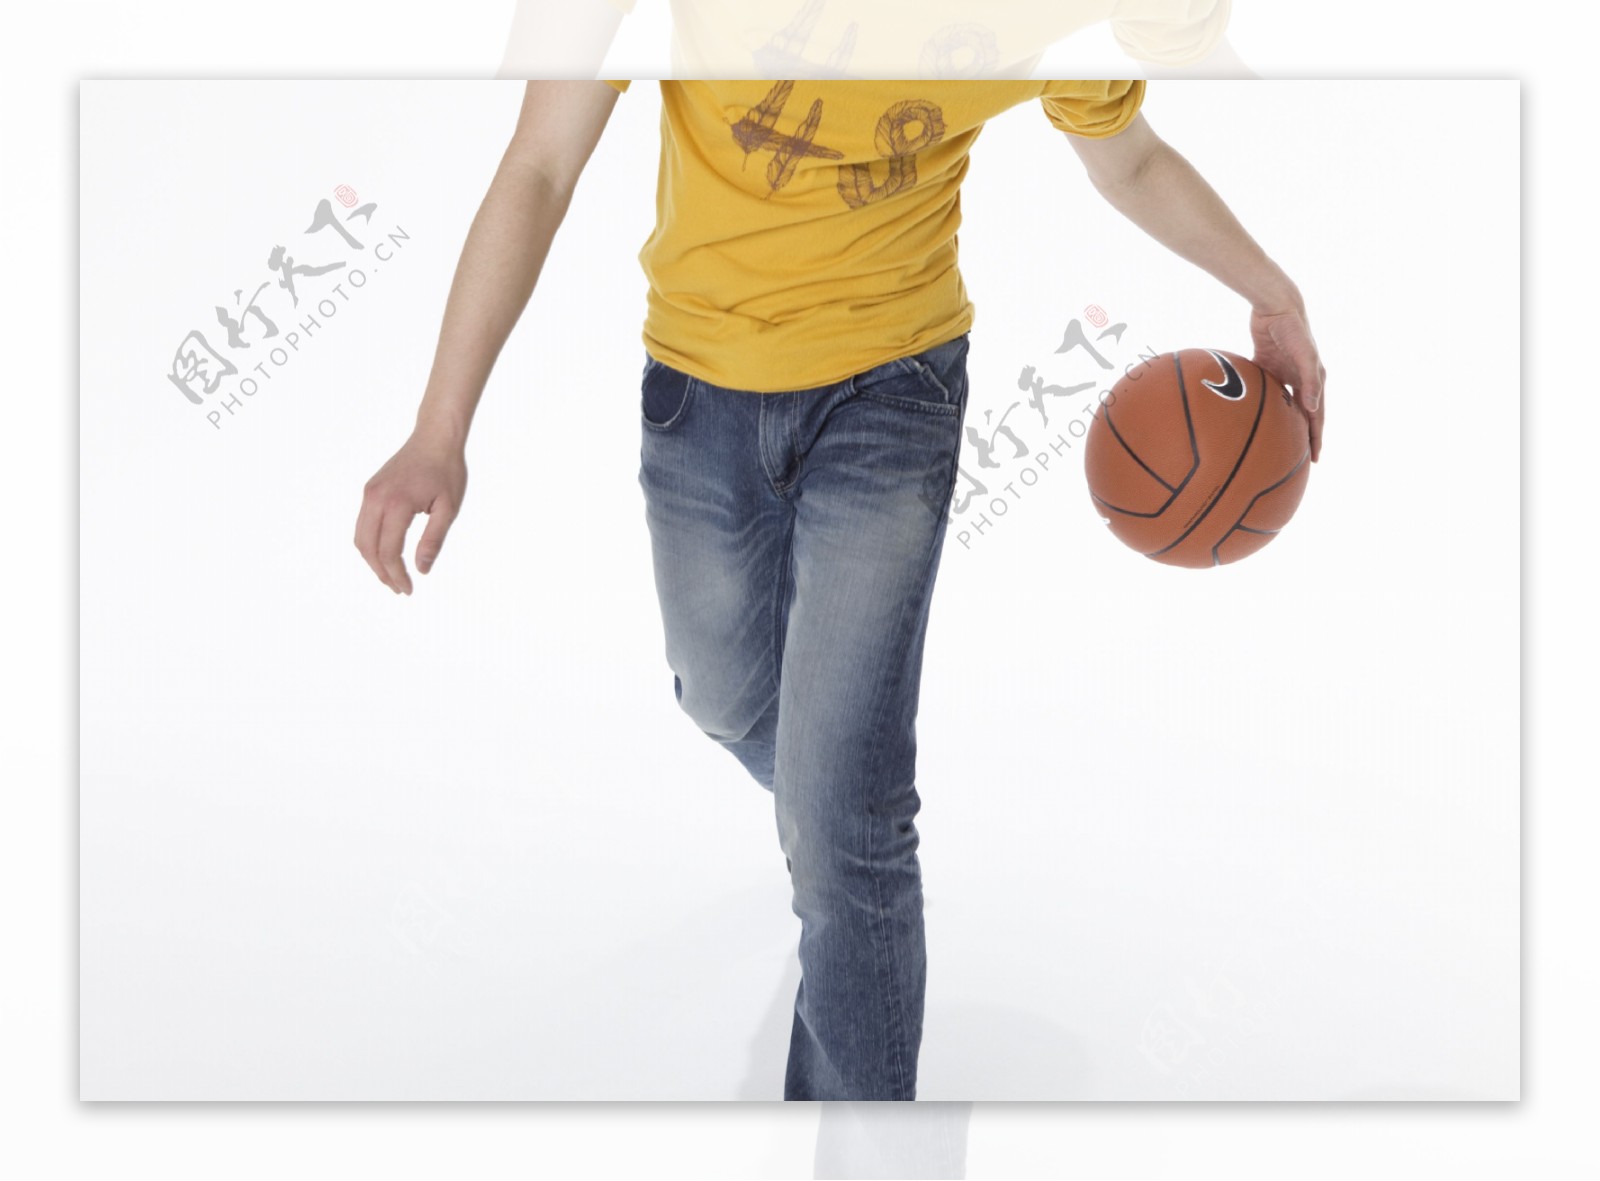 打篮球的大学生图片